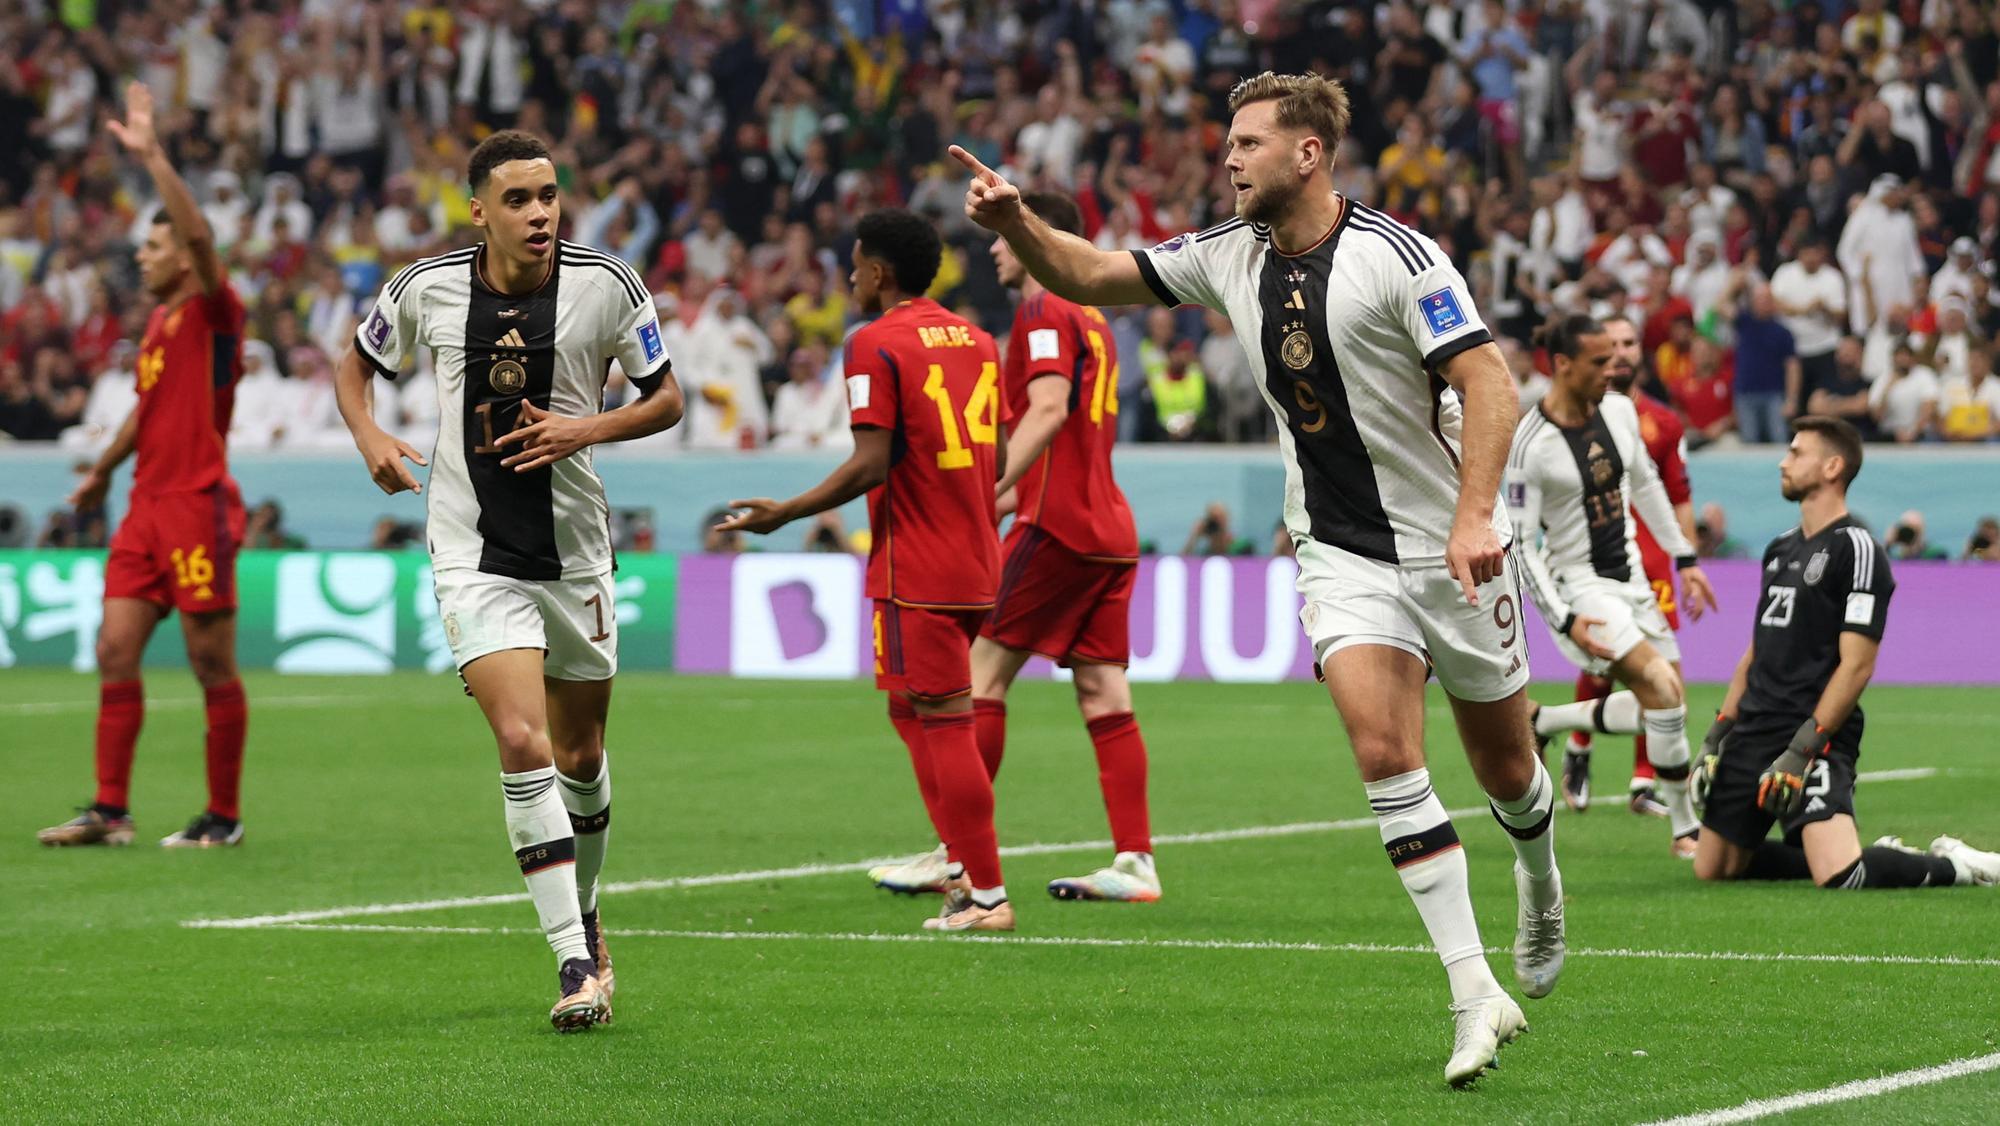 VIDEO - MS vo futbale 2022 dnes - Španielsko - Nemecko 1:1 | Šport.sk